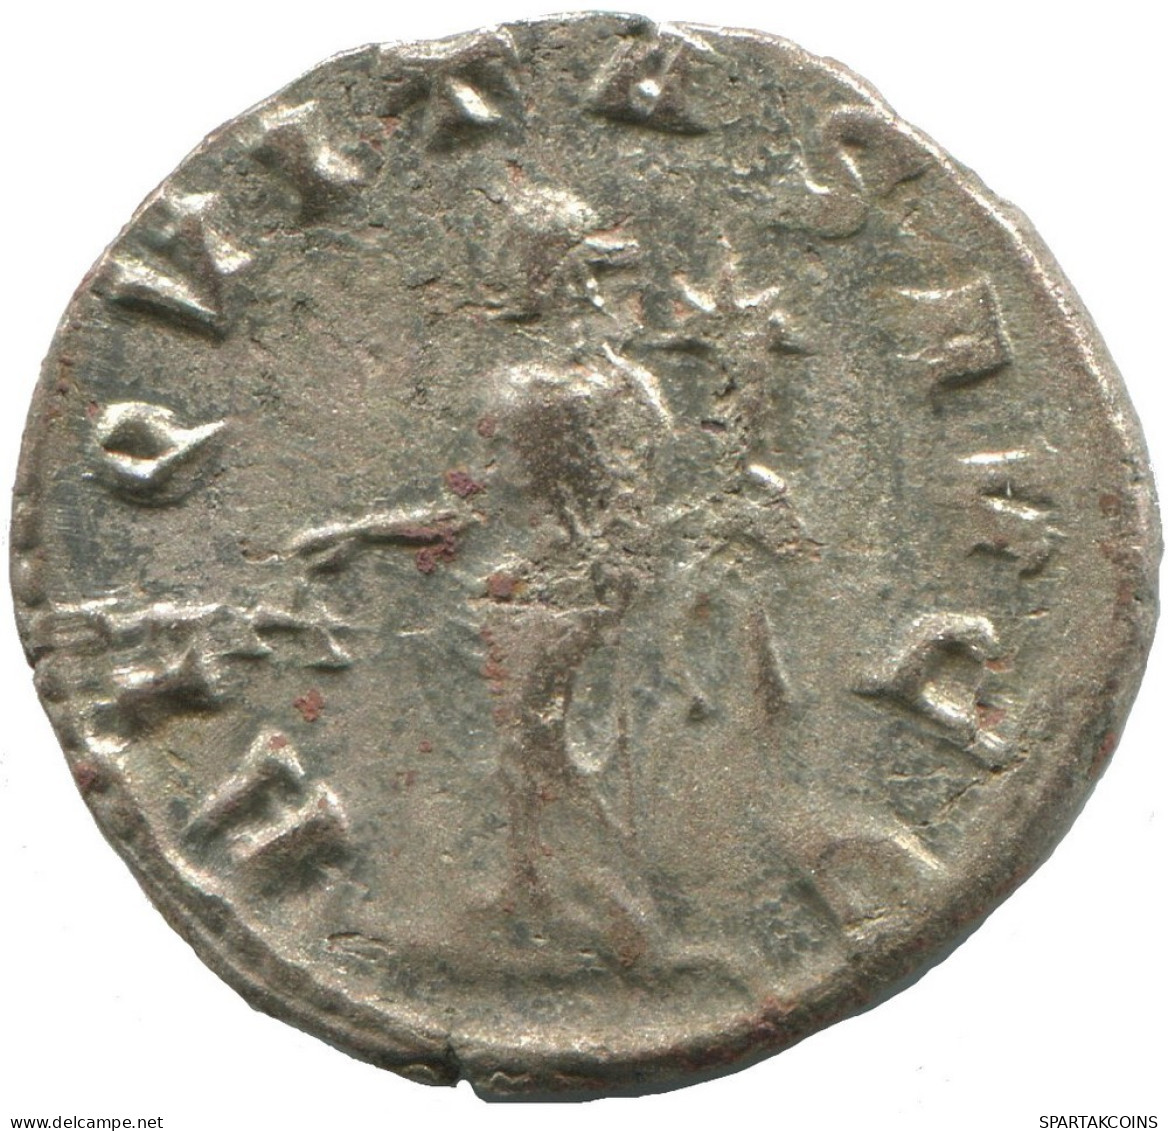 VALERIAN I VIMINACIUM AD256 SILVERED Romano ANTIGUO Moneda 3.8g/22mm #ANT2732.41.E.A - Der Soldatenkaiser (die Militärkrise) (235 / 284)